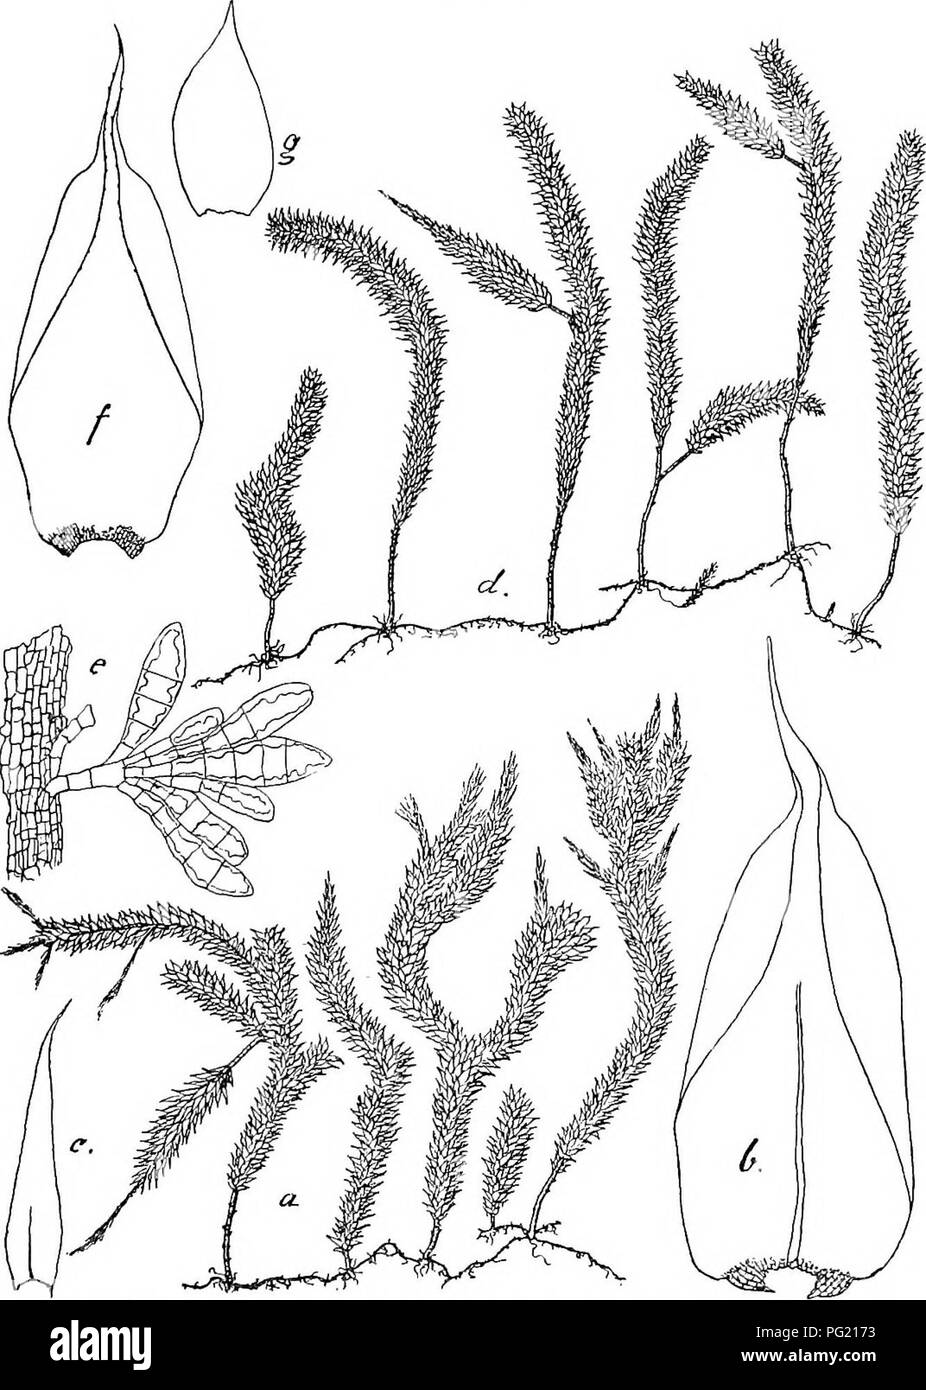 . Flore de Buitenzorg. Botany. 679 Pterohryum crassicaule Par. Index bryol. I, p. 1044 (1894â98). Garovaglia crassicaulis 0. Mull, in herb.  Symphijsodon Beccarii C. Mull, in herb. Exsiccata: M. Fi,eischer, Muse. Archip. Ind. NÂ°. 182 (1901). Zweihausig. 9 Bliitea knospenformig auf kurzem Peri- chaetialast. Archegonien wie bei P. gedehensis, ebenso die Hull- Fig. 127.. Fterohryopsis crassicauUs (C. MiiLL.) und Fterobrijopsis gedehensis Flsch. u. Habitusbild (natiirl. Grosse). e. Stongelburtige Brutkorper â ^. *. SteDgelblatt '/â¢ /â¢ Stengelblatt V- c. Niedeiblatt des sec. Stengels Y- 9- Nied Stock Photo